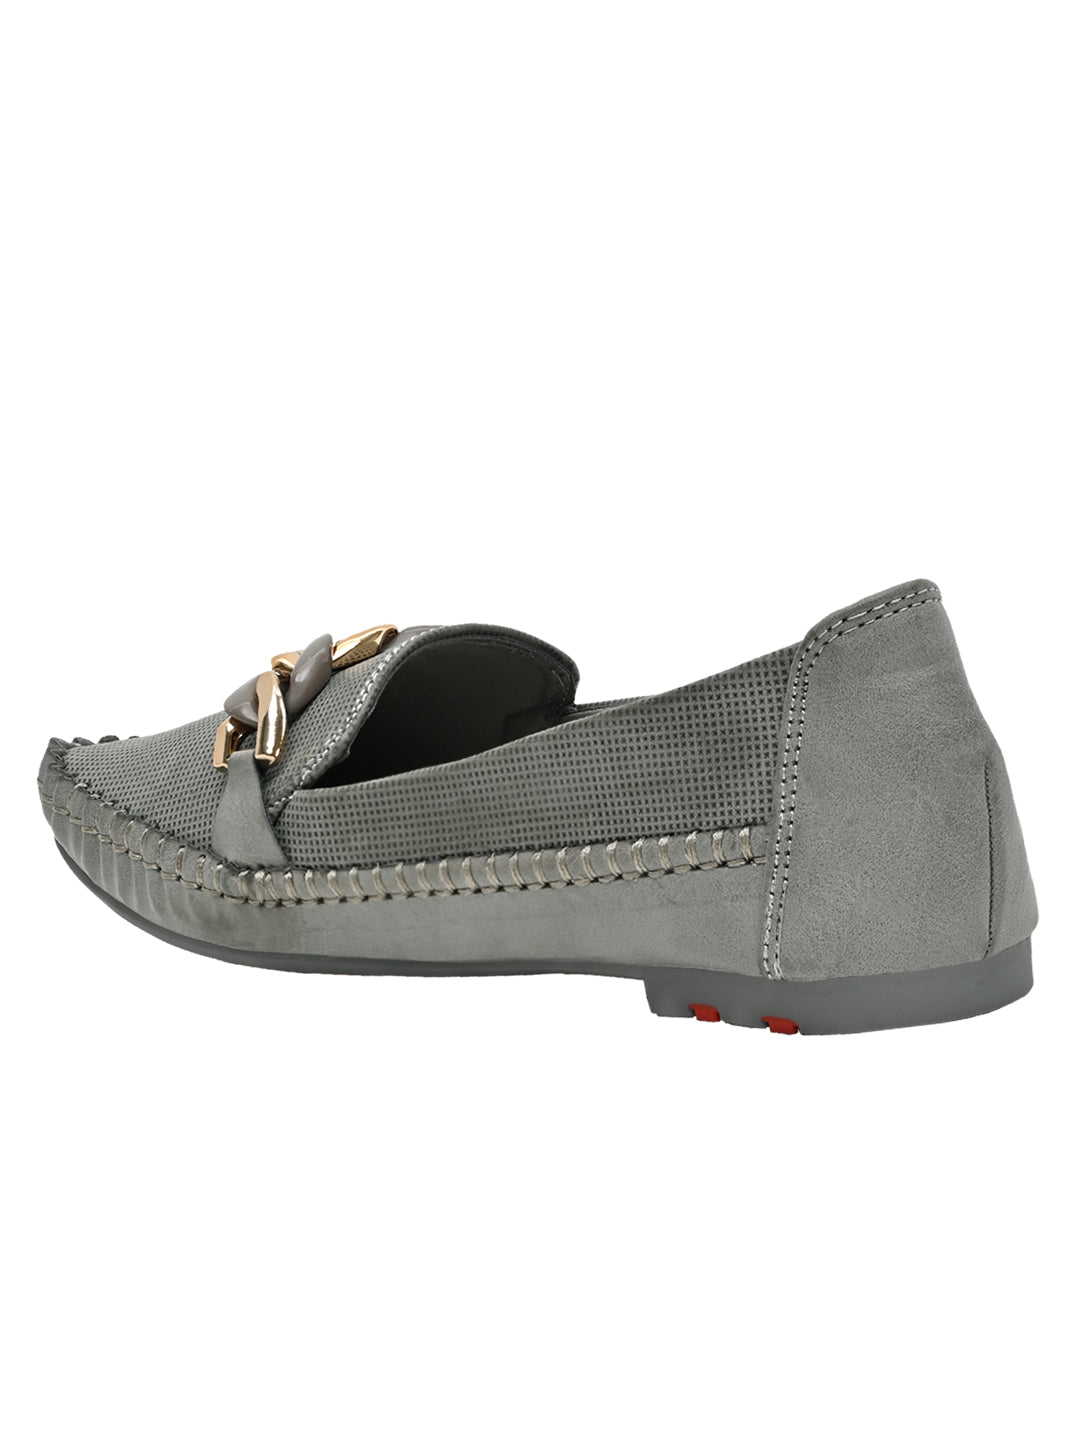 Footwear, Women Footwear, Dark Grey Loafers